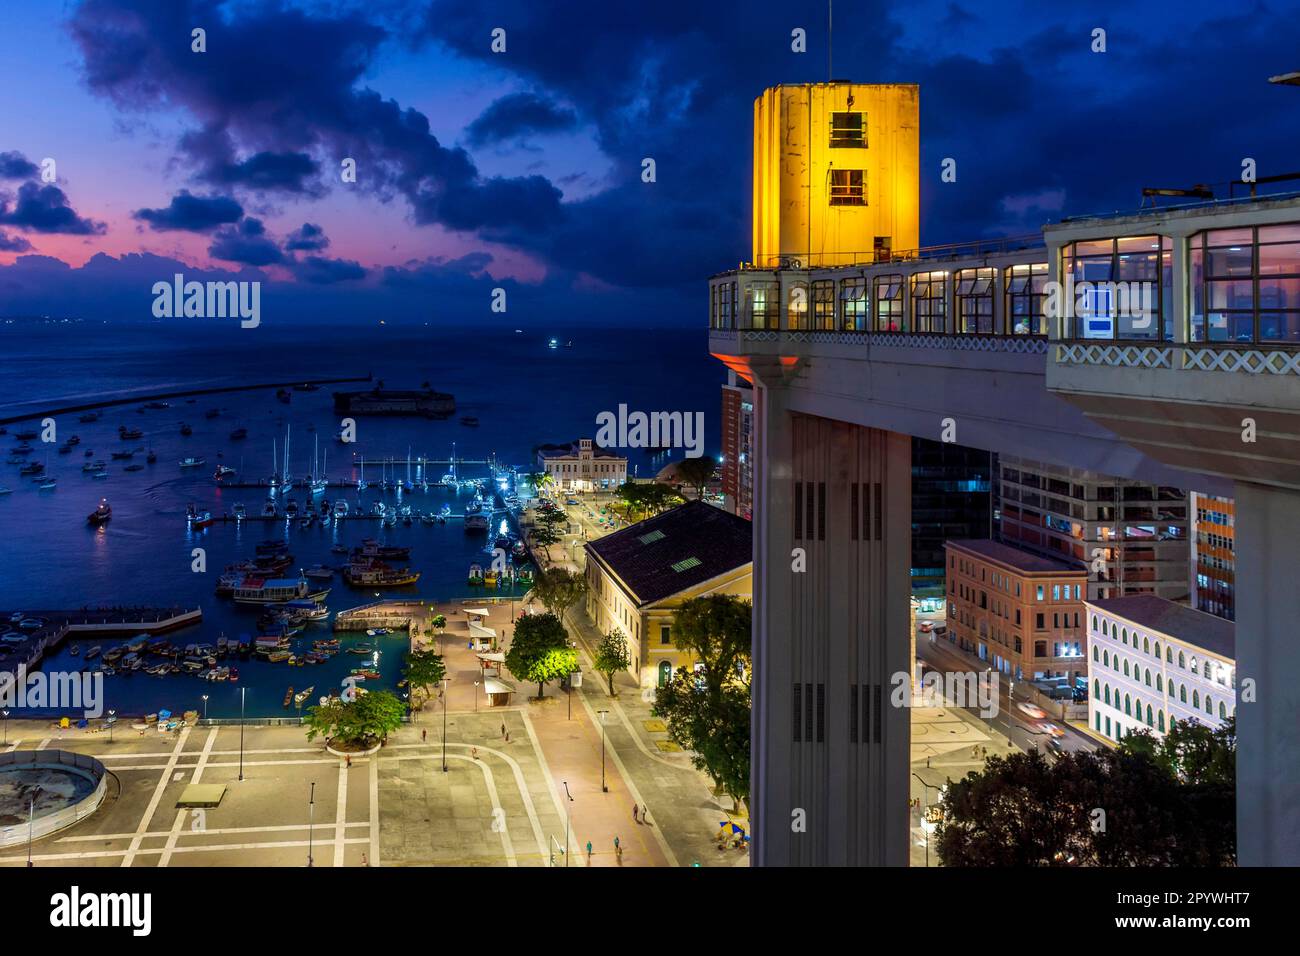 Façade du célèbre ascenseur de Lacerda illuminée la nuit avec la ville et les bateaux en arrière-plan dans la ville de Salvador, Bahia, Brésil Banque D'Images